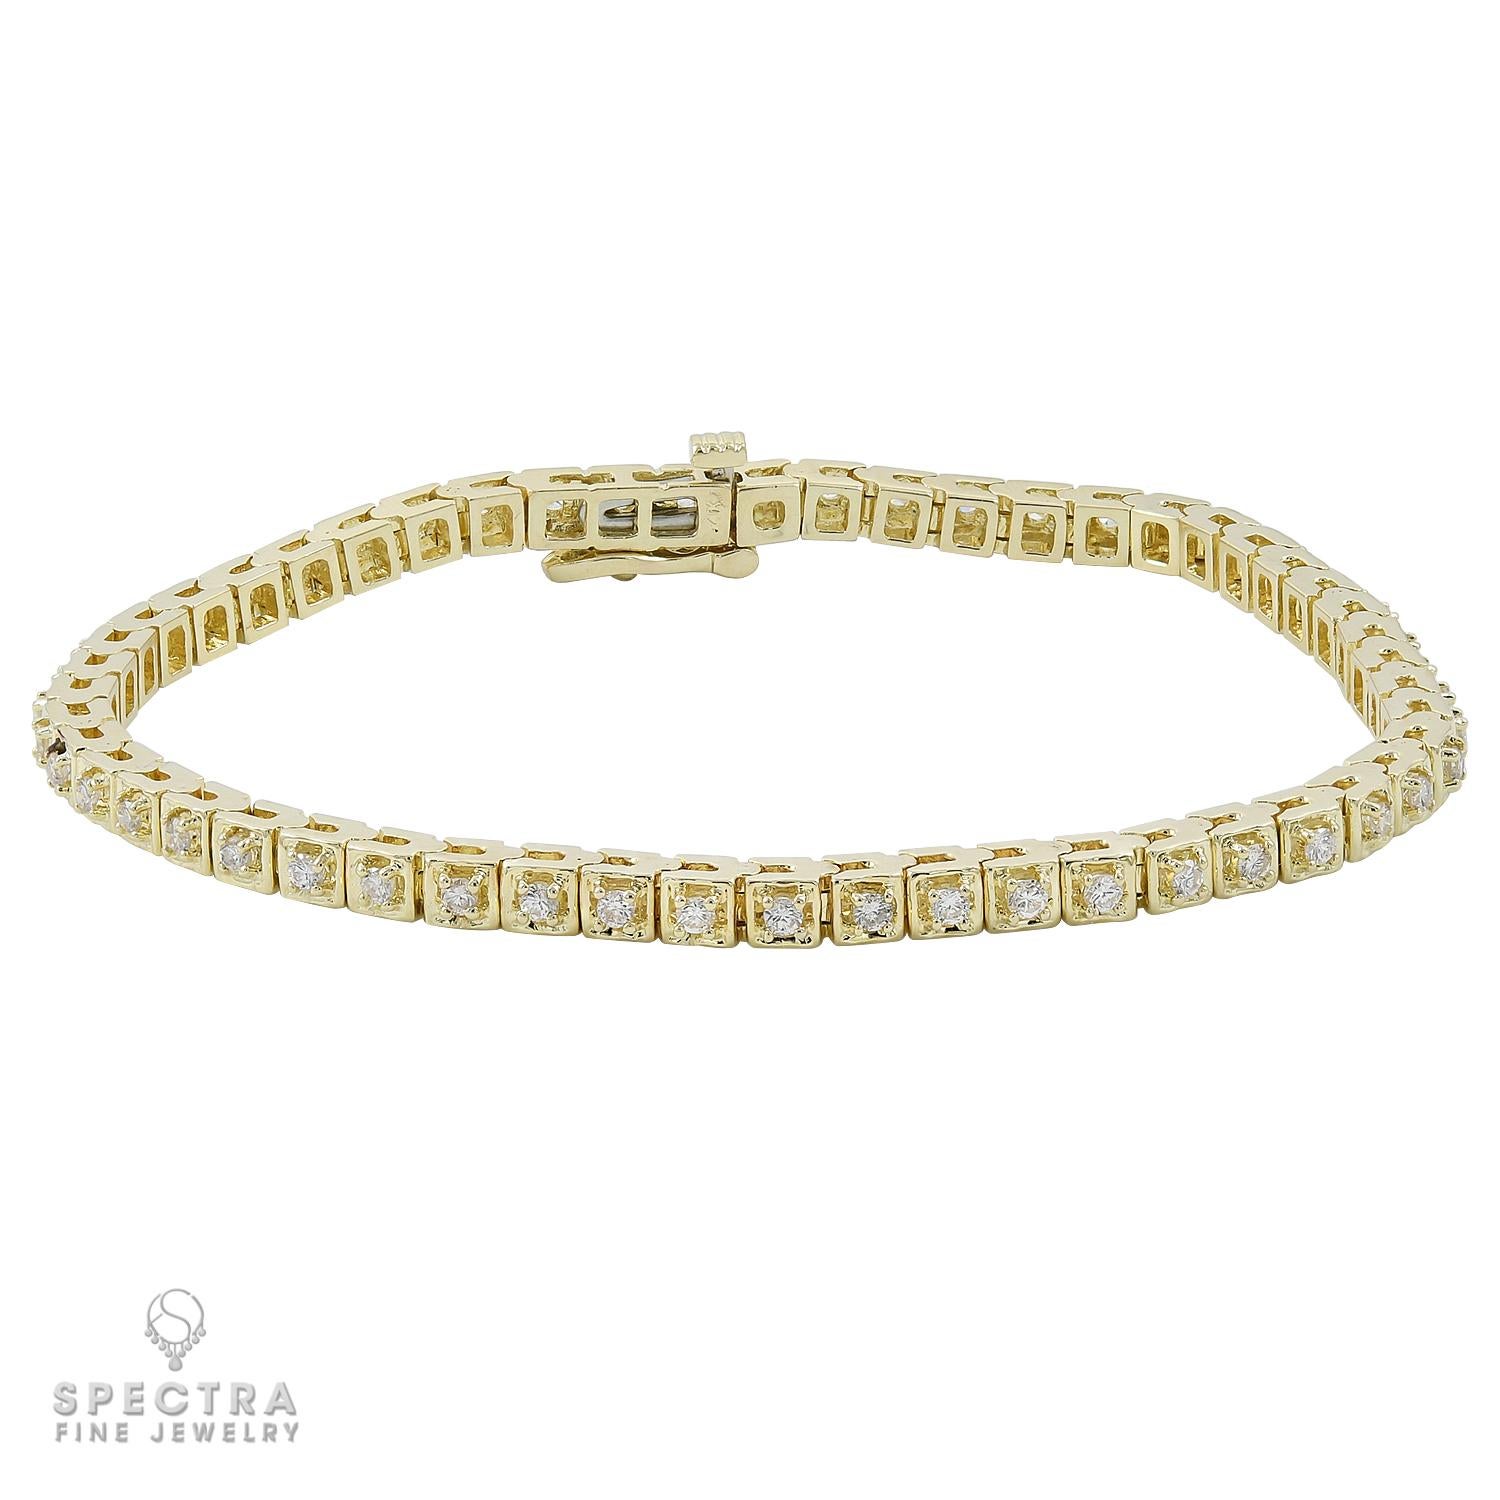 Un bracelet tennis de grande classe comprenant 52 diamants pesant un total de 1,56 carats.
Chaque diamant pèse 0,03 carat.
Les diamants ne sont pas certifiés, la plupart sont de couleur H-I et de pureté VS-SI.
7 pouces de long. 
Or jaune 14k, poids